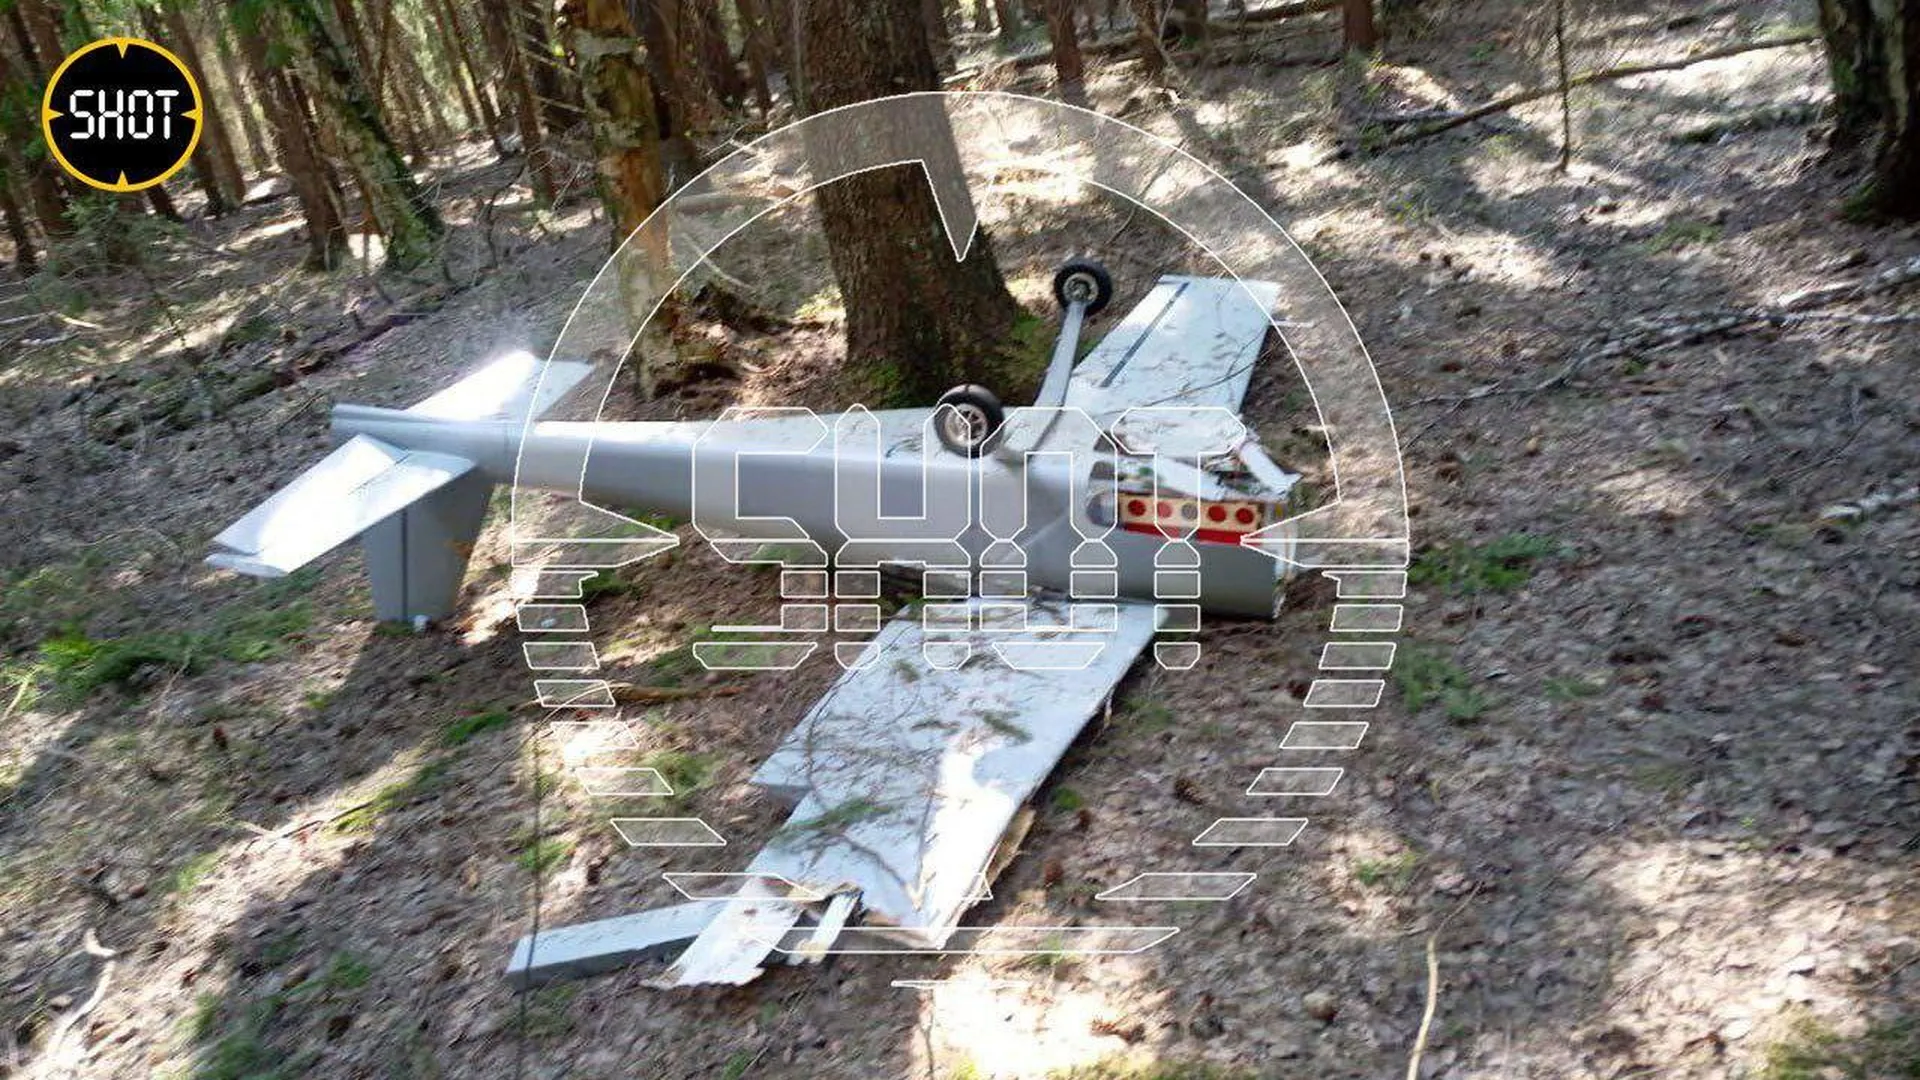 Начиненный взрывчаткой беспилотник нашли в лесополосе в Подмосковье — СМИ